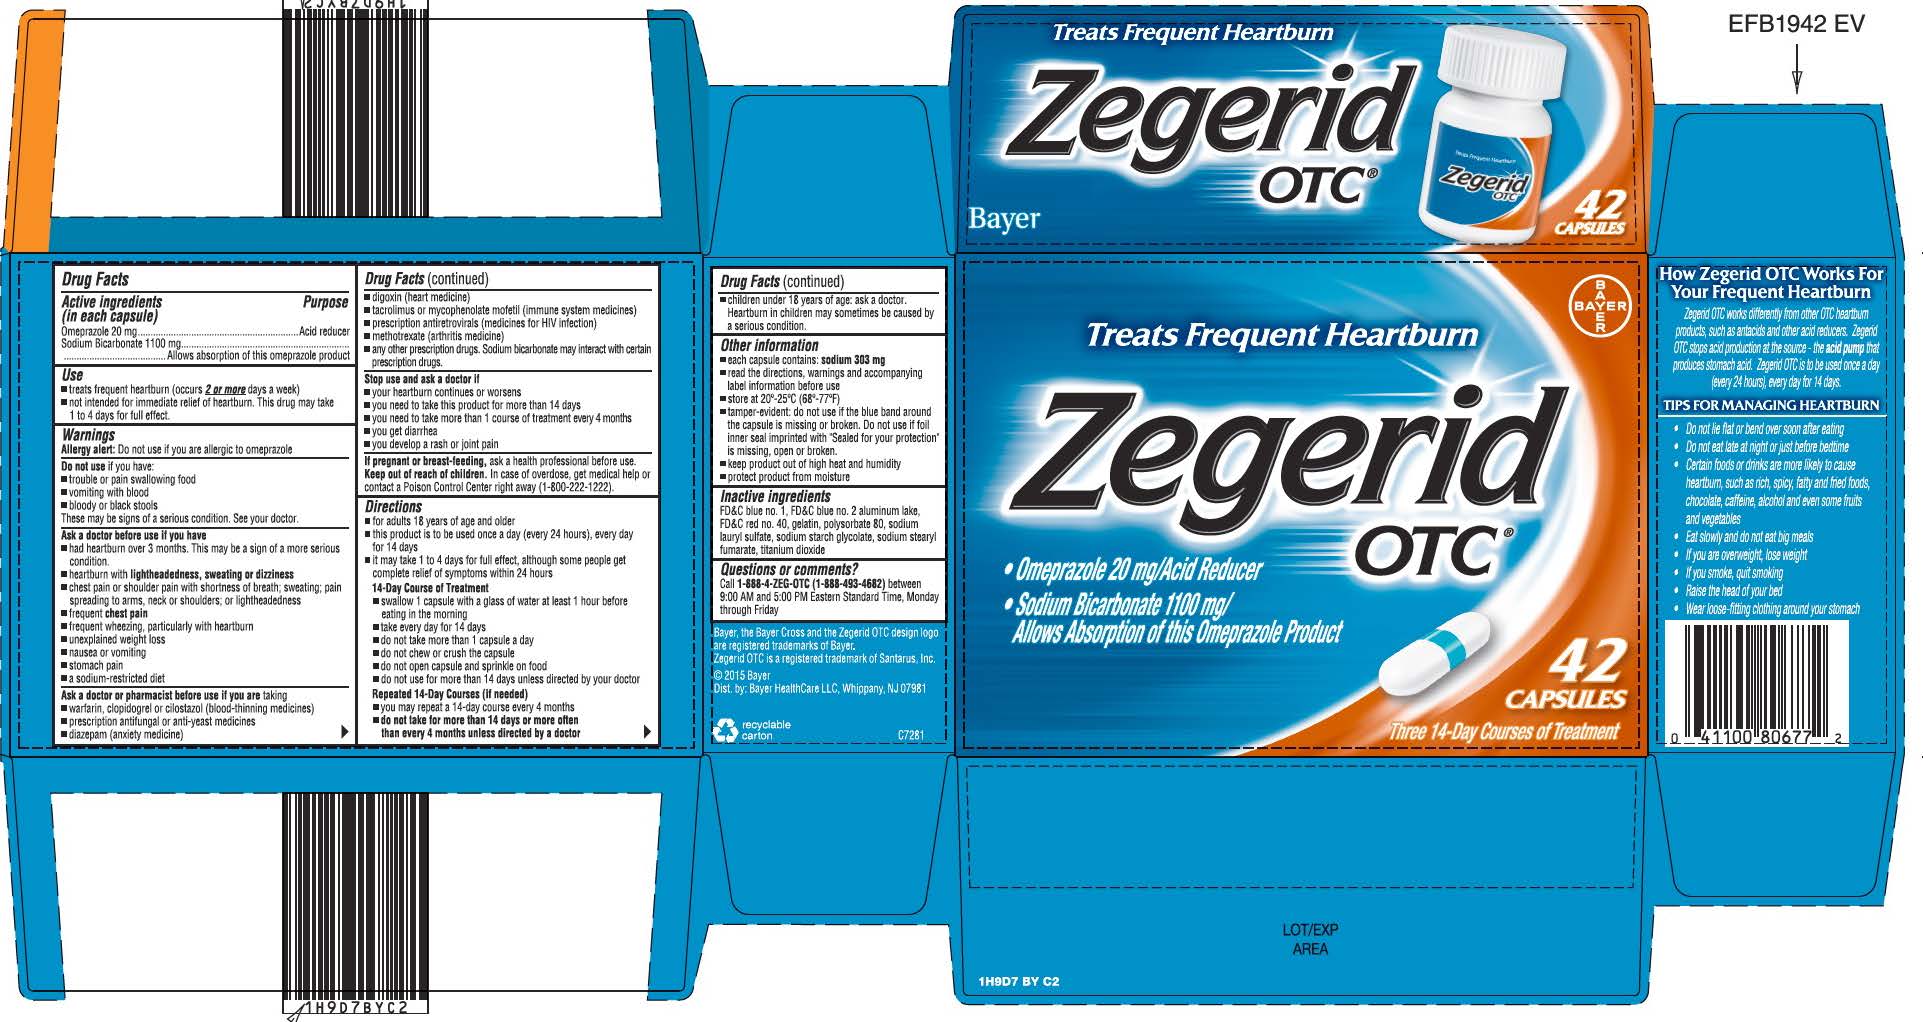 ZEGERID OTC omeprazole and sodium bicarbonate capsule gelatin coated